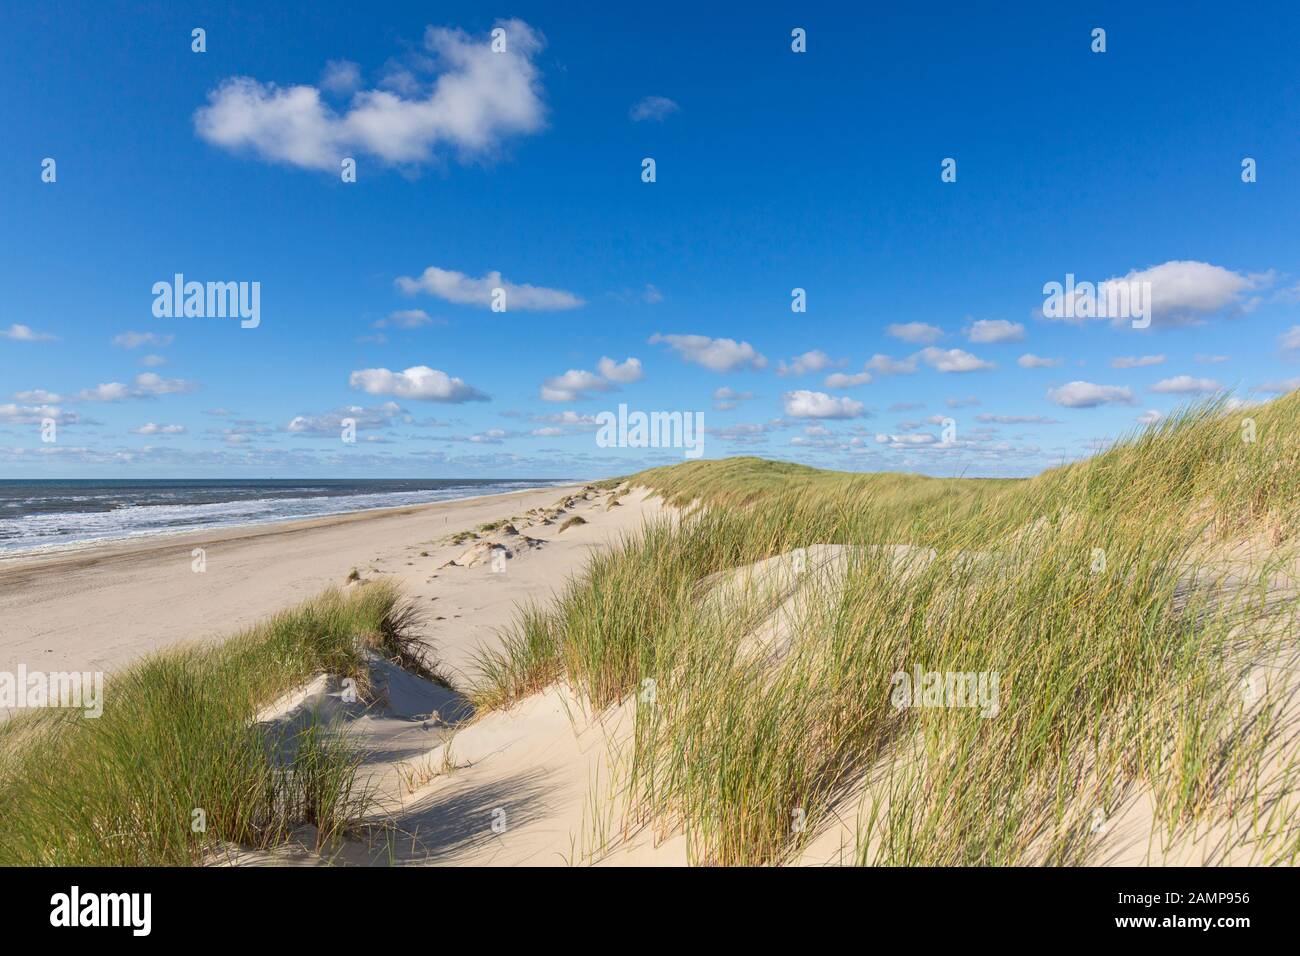 Strand und europäisches Marramgras/Strandgras (Ammophila arenaria) in den Dünen auf Texel, Westfriesische Insel im Wattenmeer, Niederlande Stockfoto